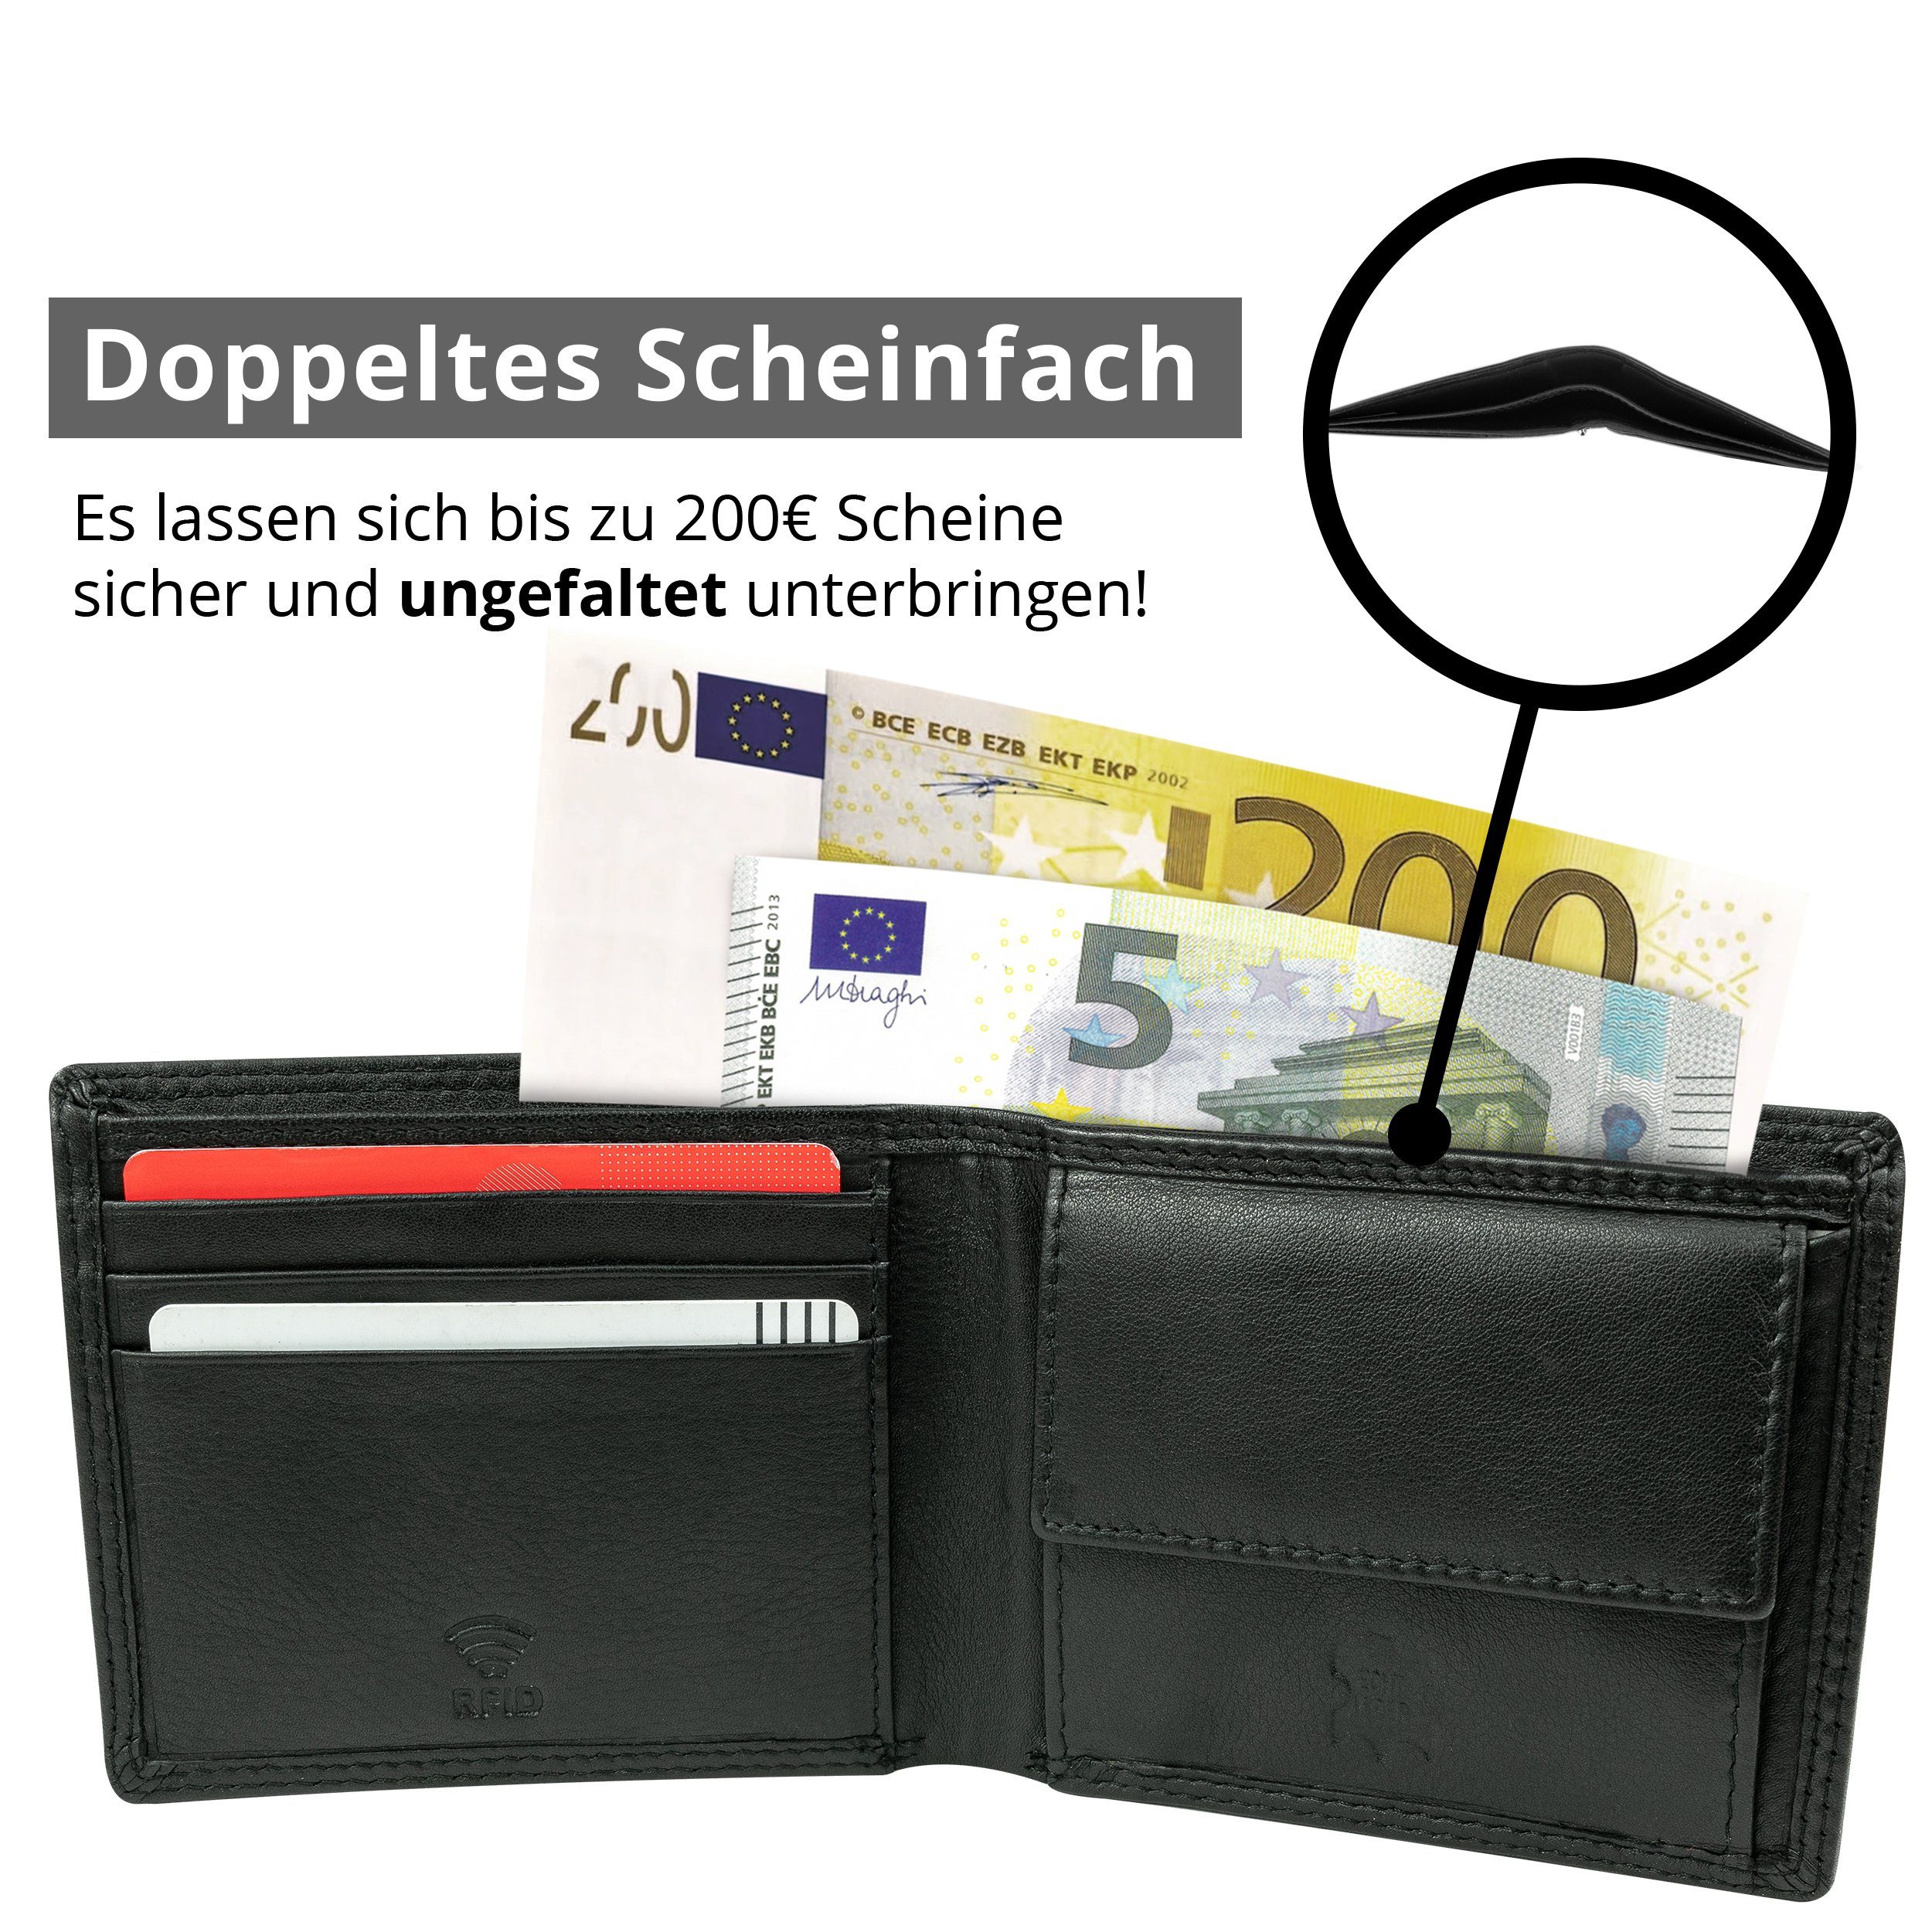 Herren Nappa RFID-/NFC-Schutz, Premium Portemonnaie Geschenkbox Geldbörse (querformat), 100% Premium MOKIES Echt-Leder, Nappa-Leder, GN101